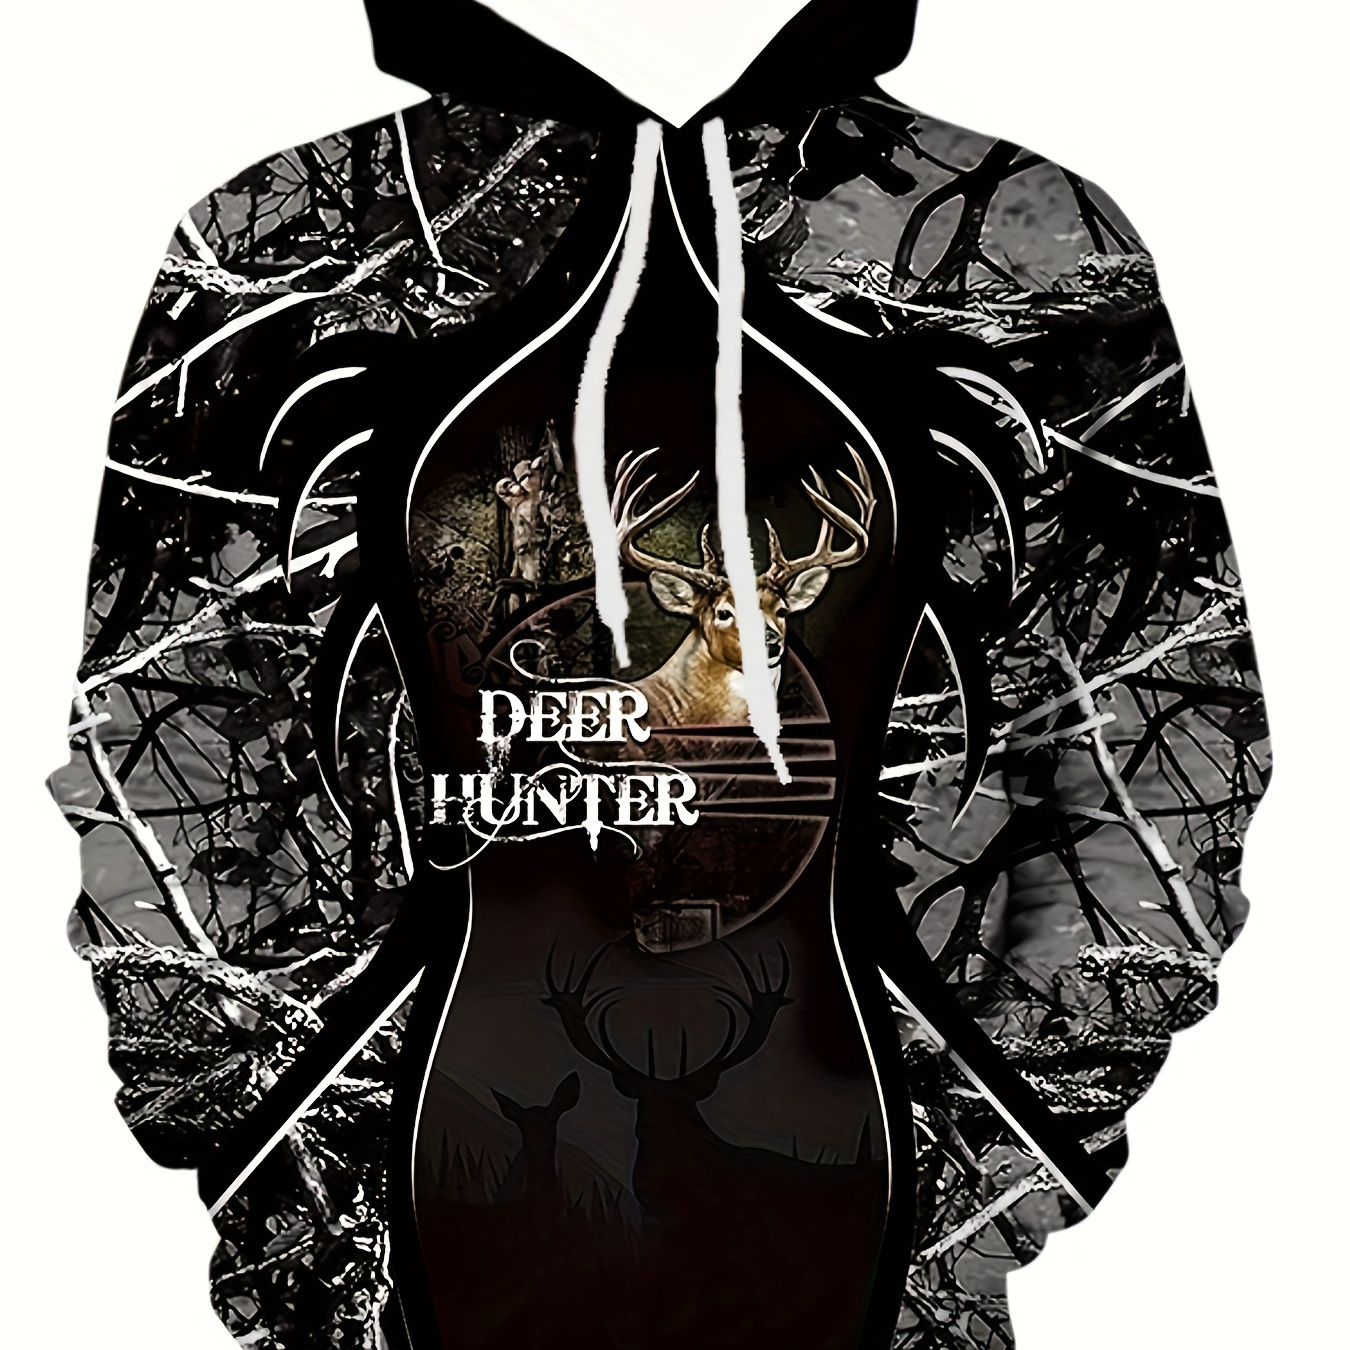 

Deer Hunter Print Hoodie, Cool Hoodies For Men, Men's Casual Graphic Design Hooded Sweatshirt Streetwear For Winter Fall, As Gifts